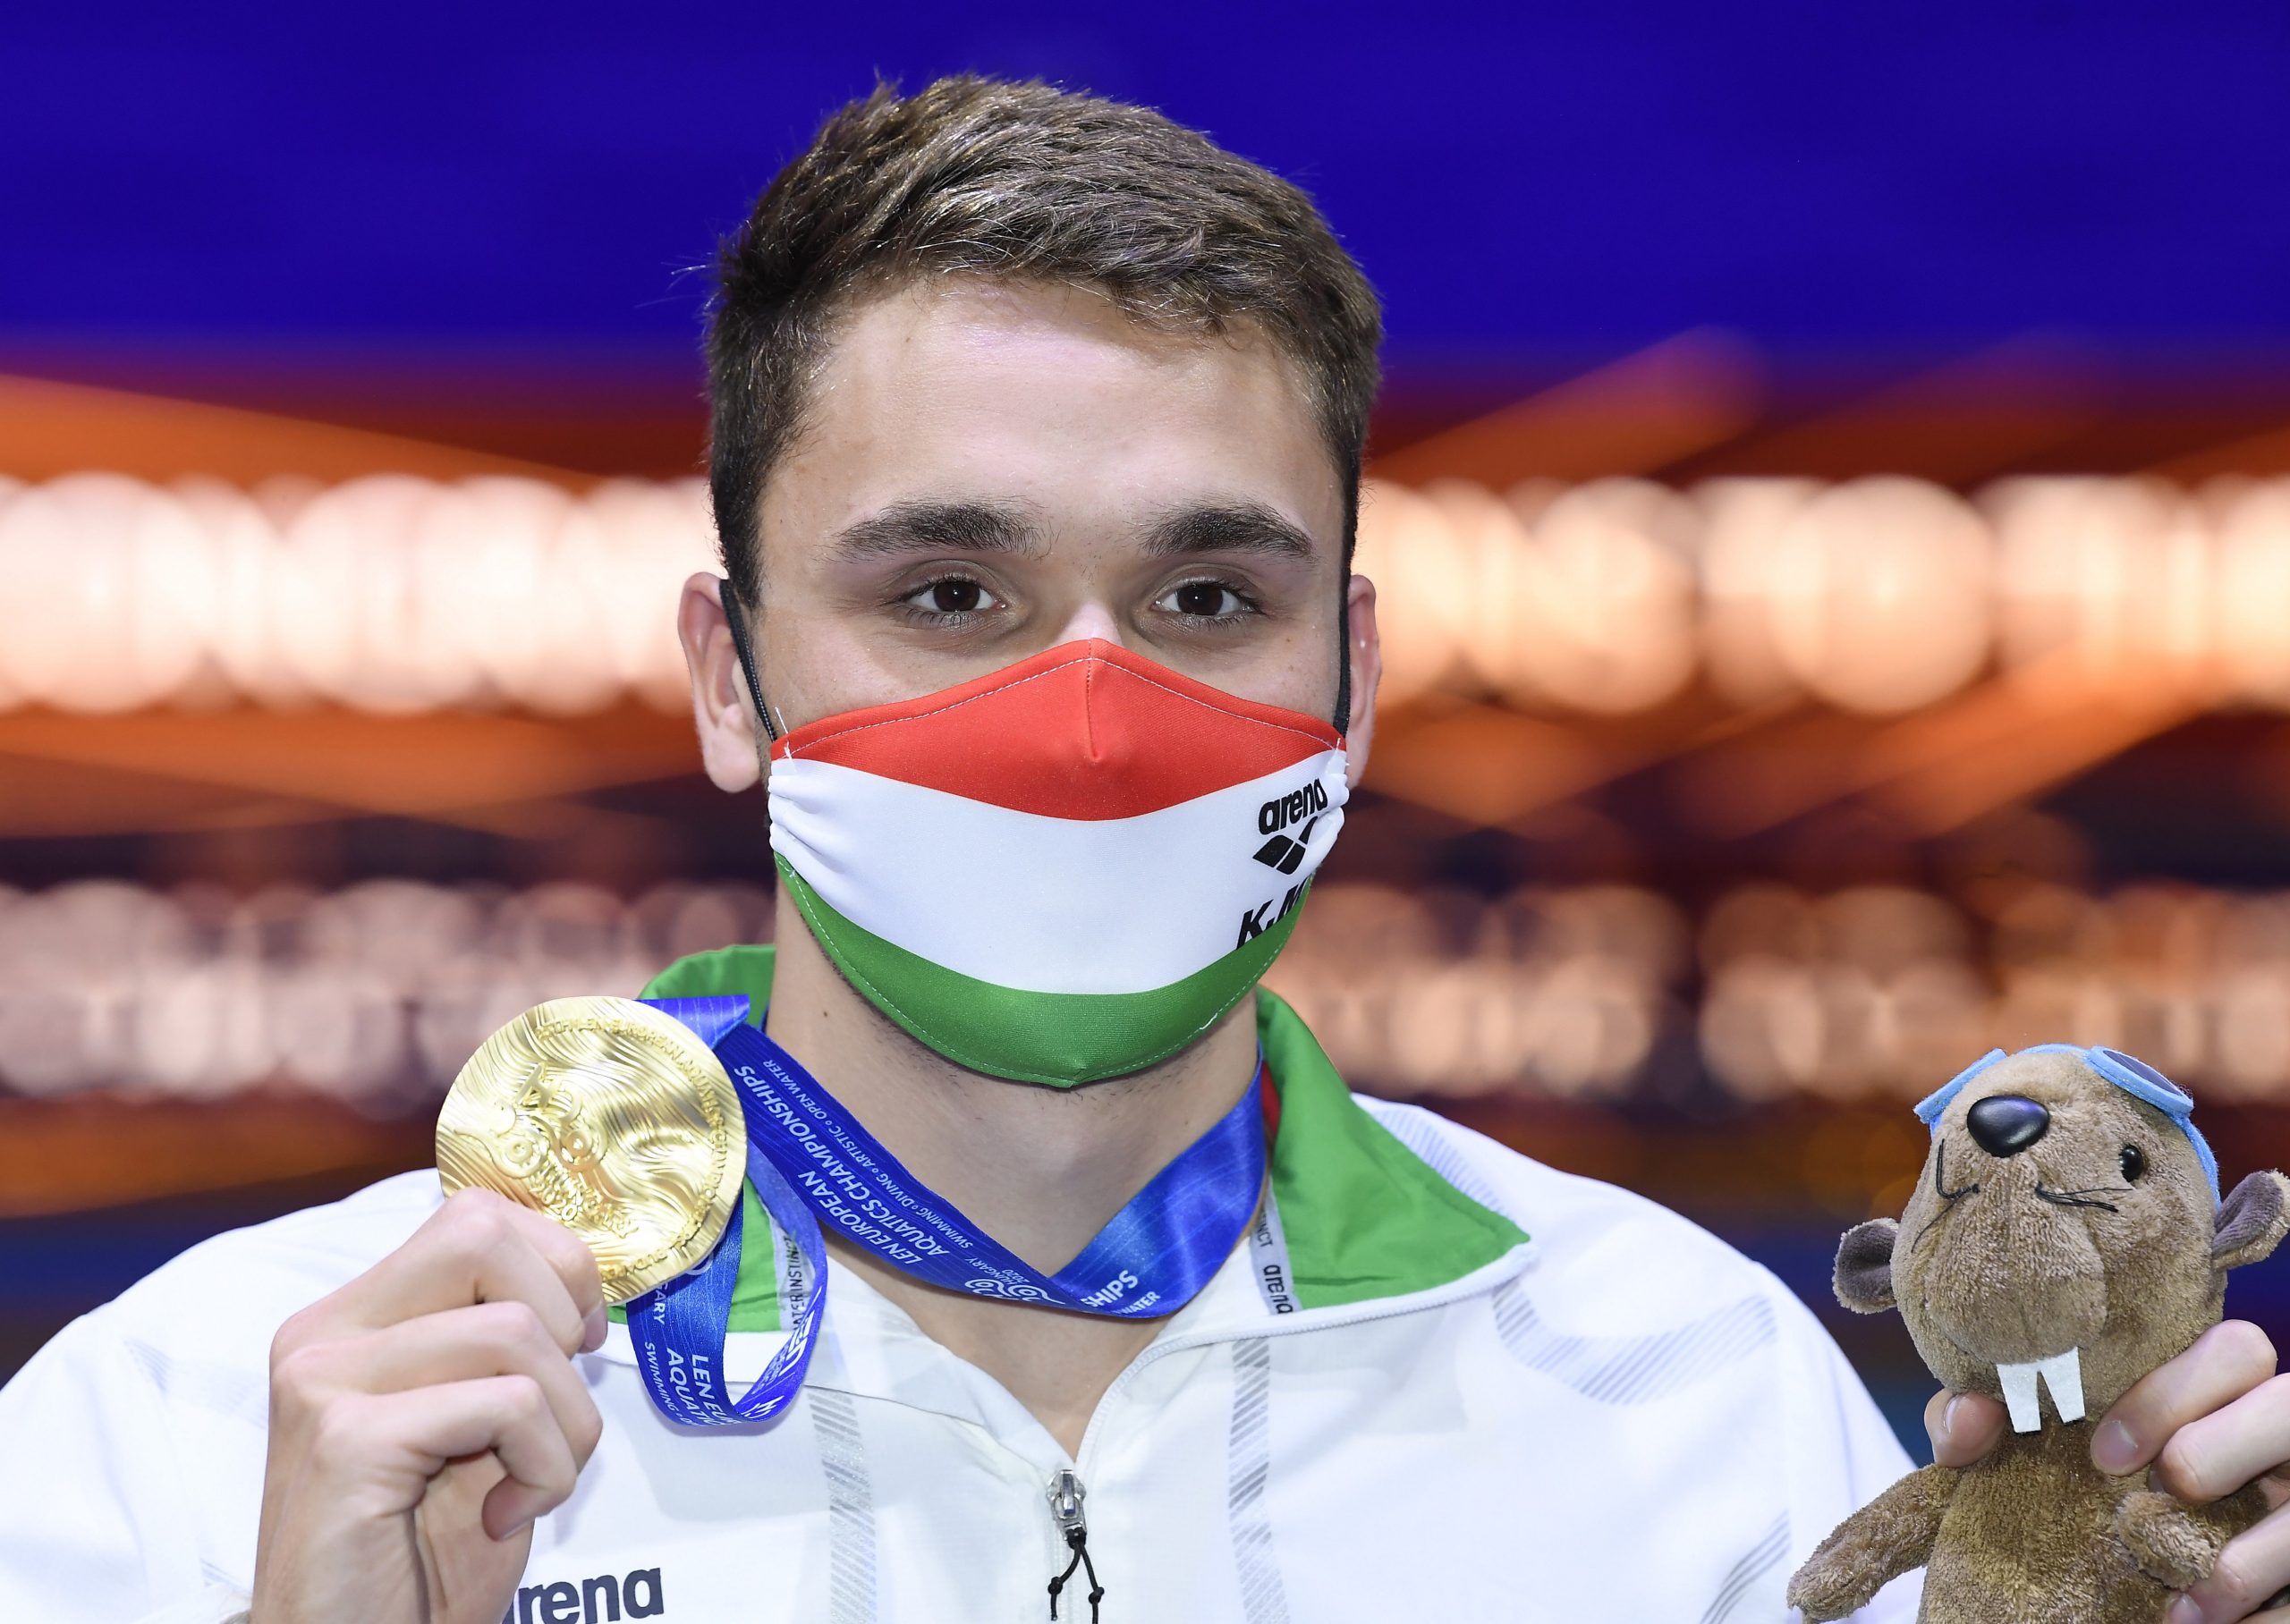 Hungary Wins 15 Medals at European Aquatics Championships